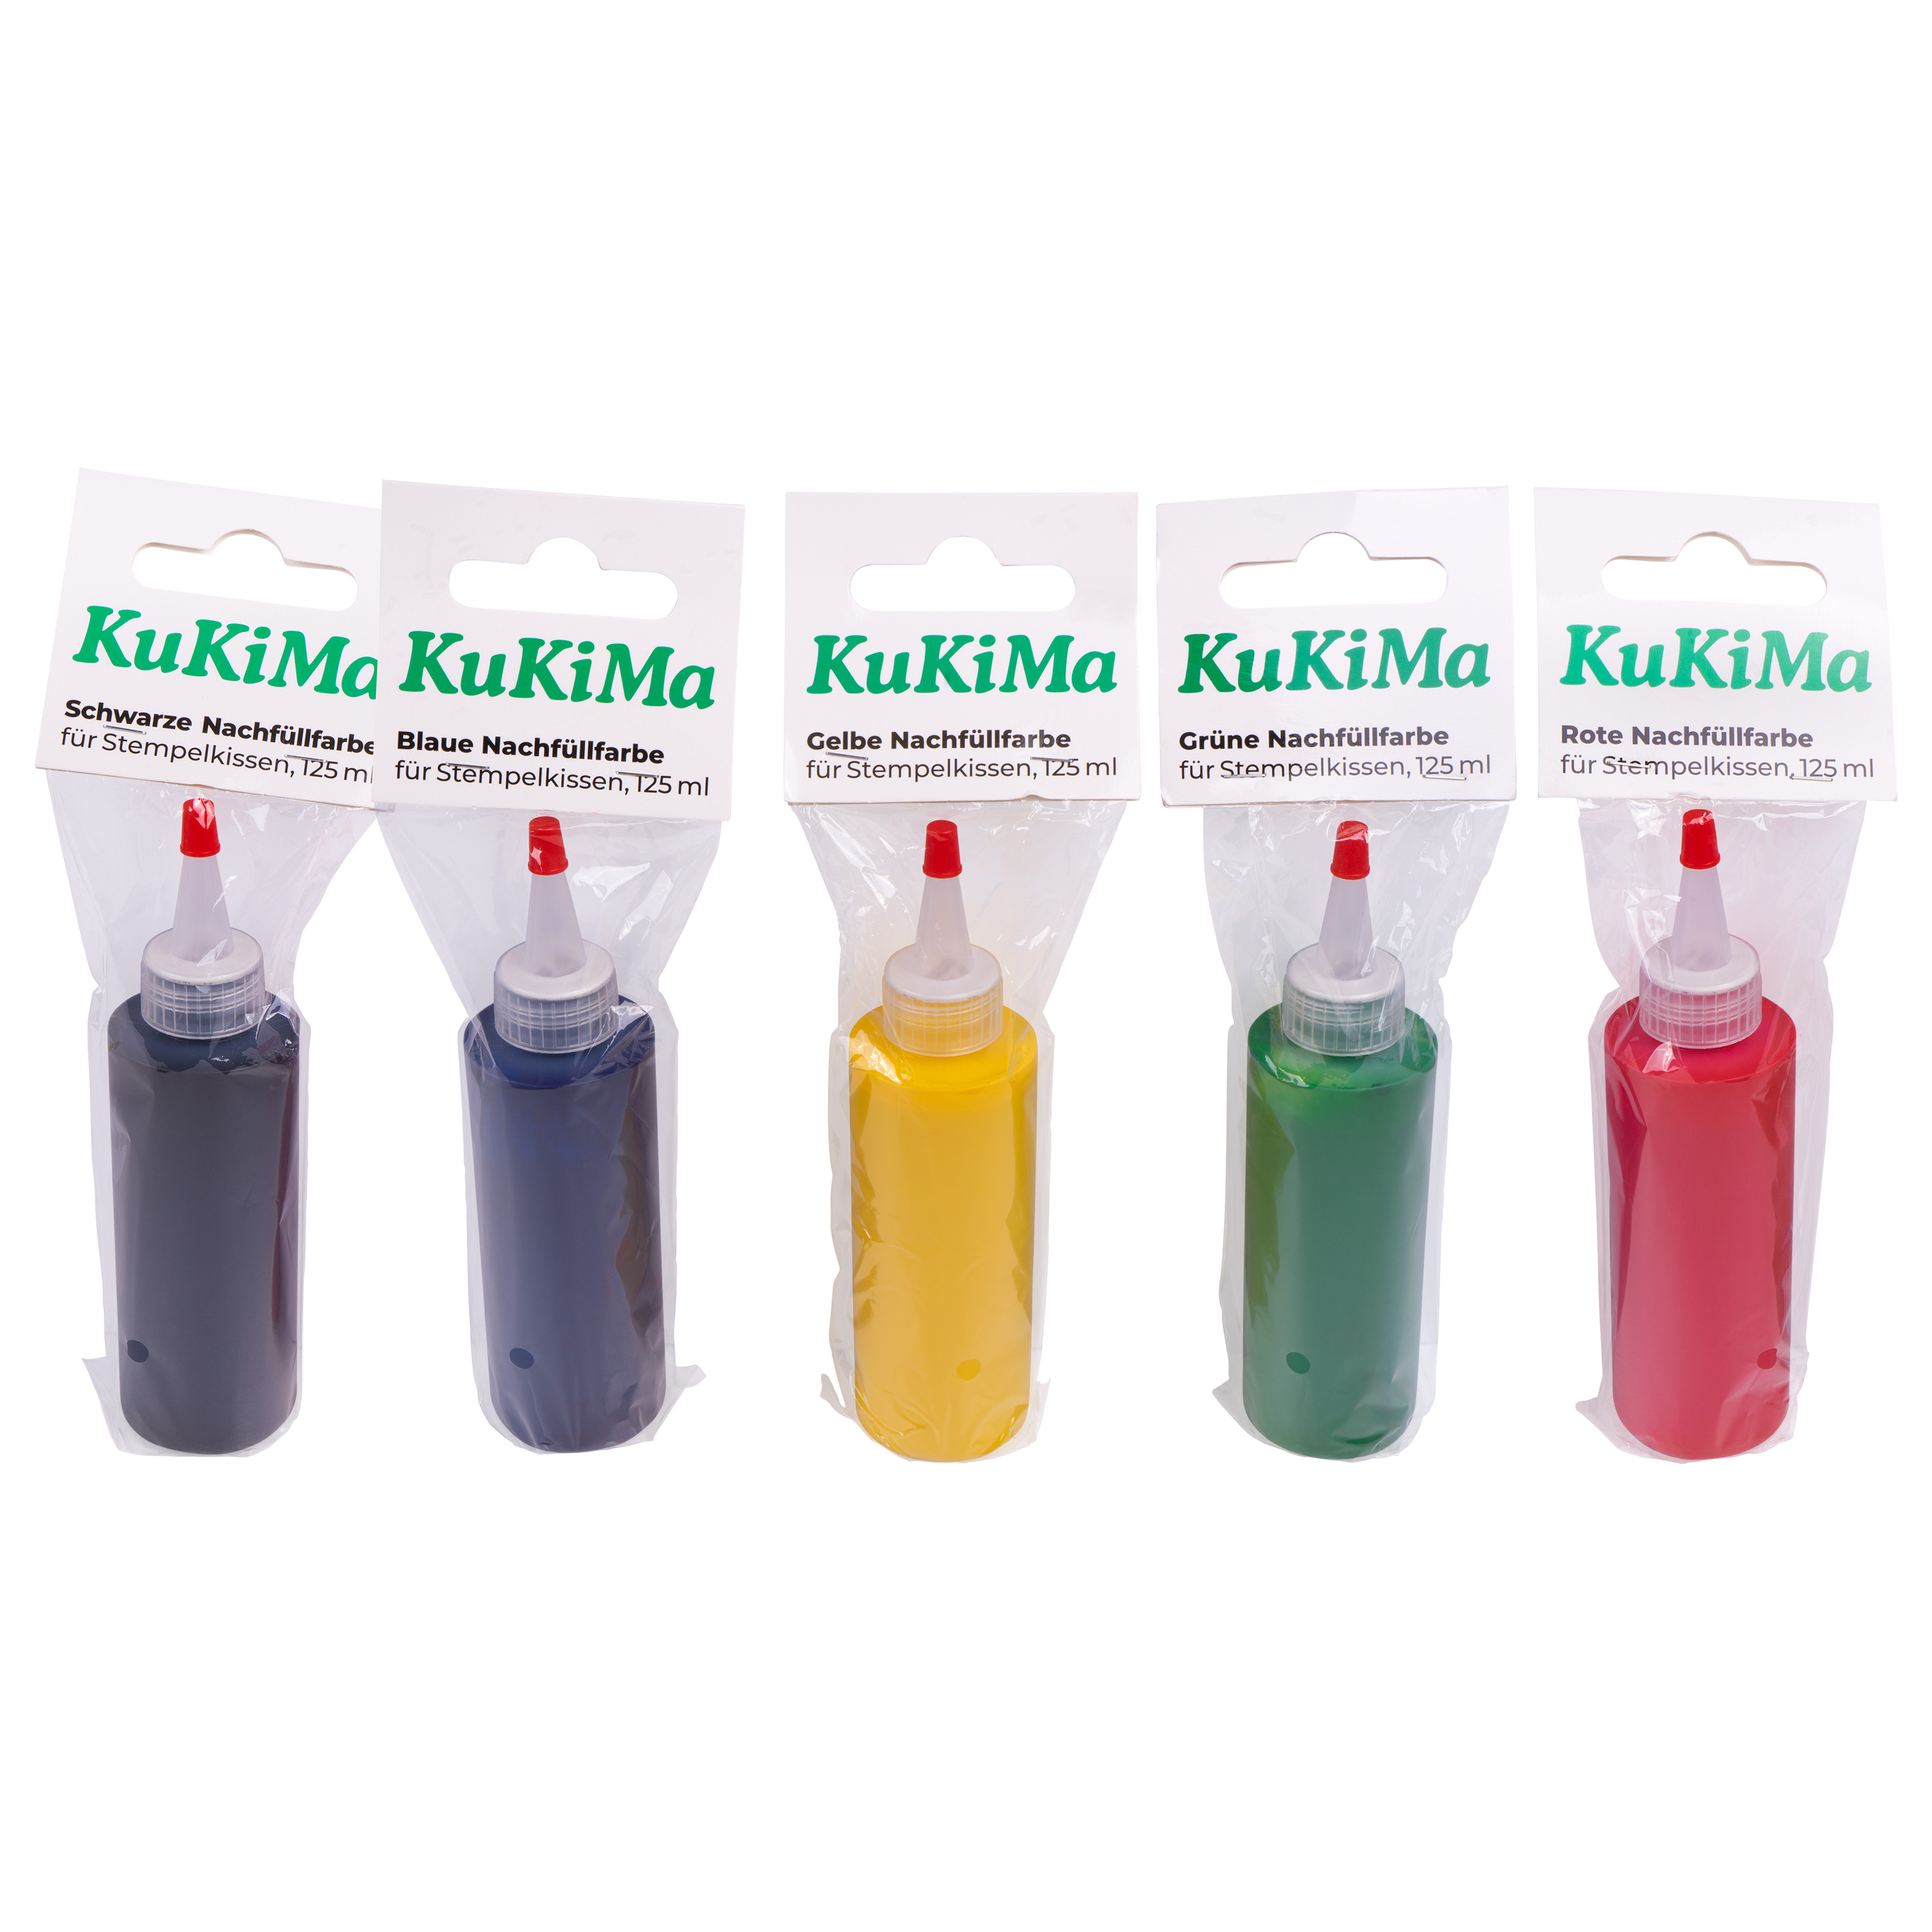 KuKiMa Grüne Nachfüllfarbe für Stempelkissen, 125 ml